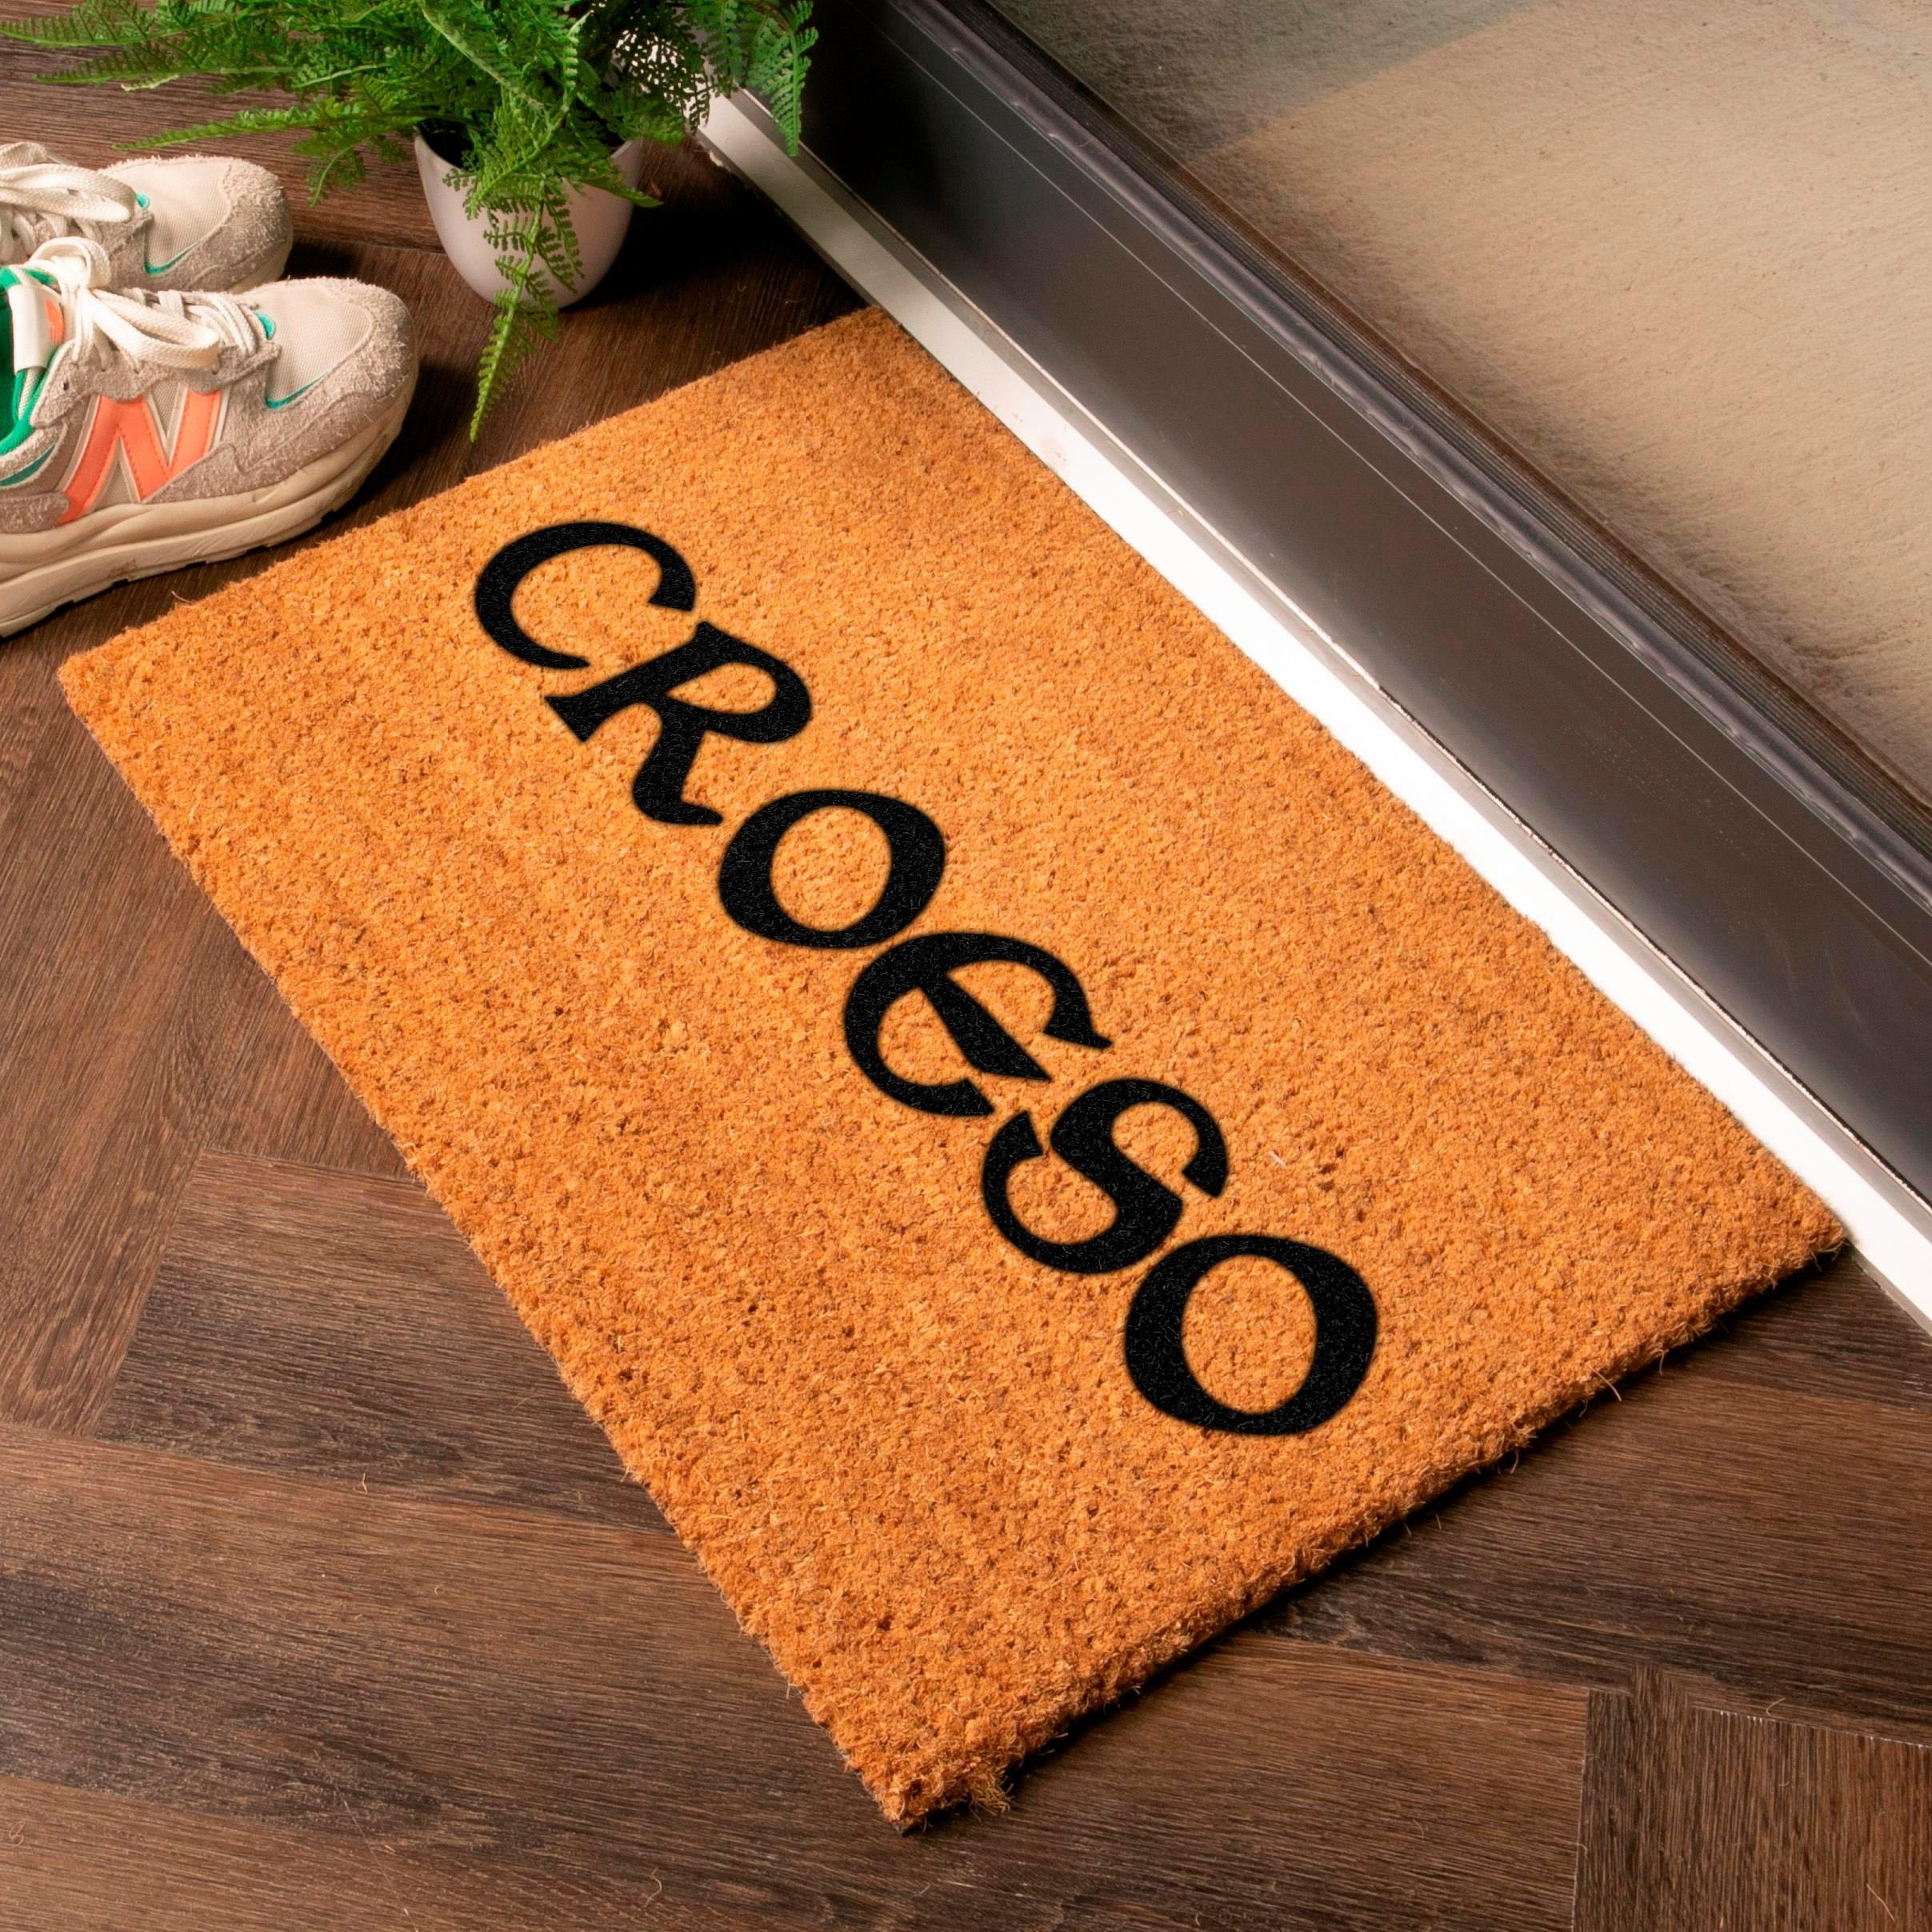 Welsh Croeso 'Welcome' Doormat - image 1